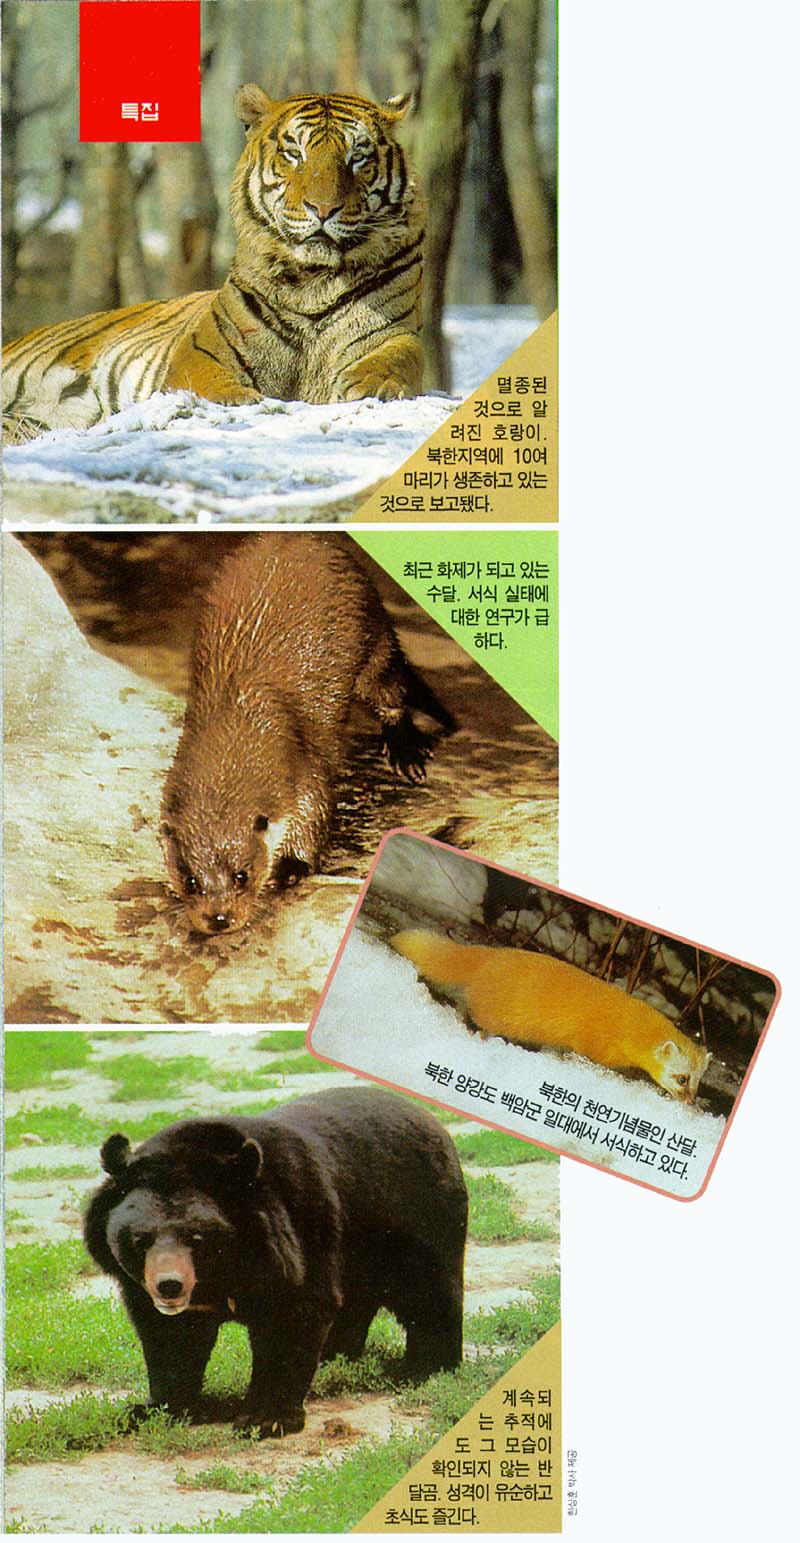 KoreanMammals-Tiger-Eurasian River Otter-Japanese Marten-Black Bear-J00.jpg